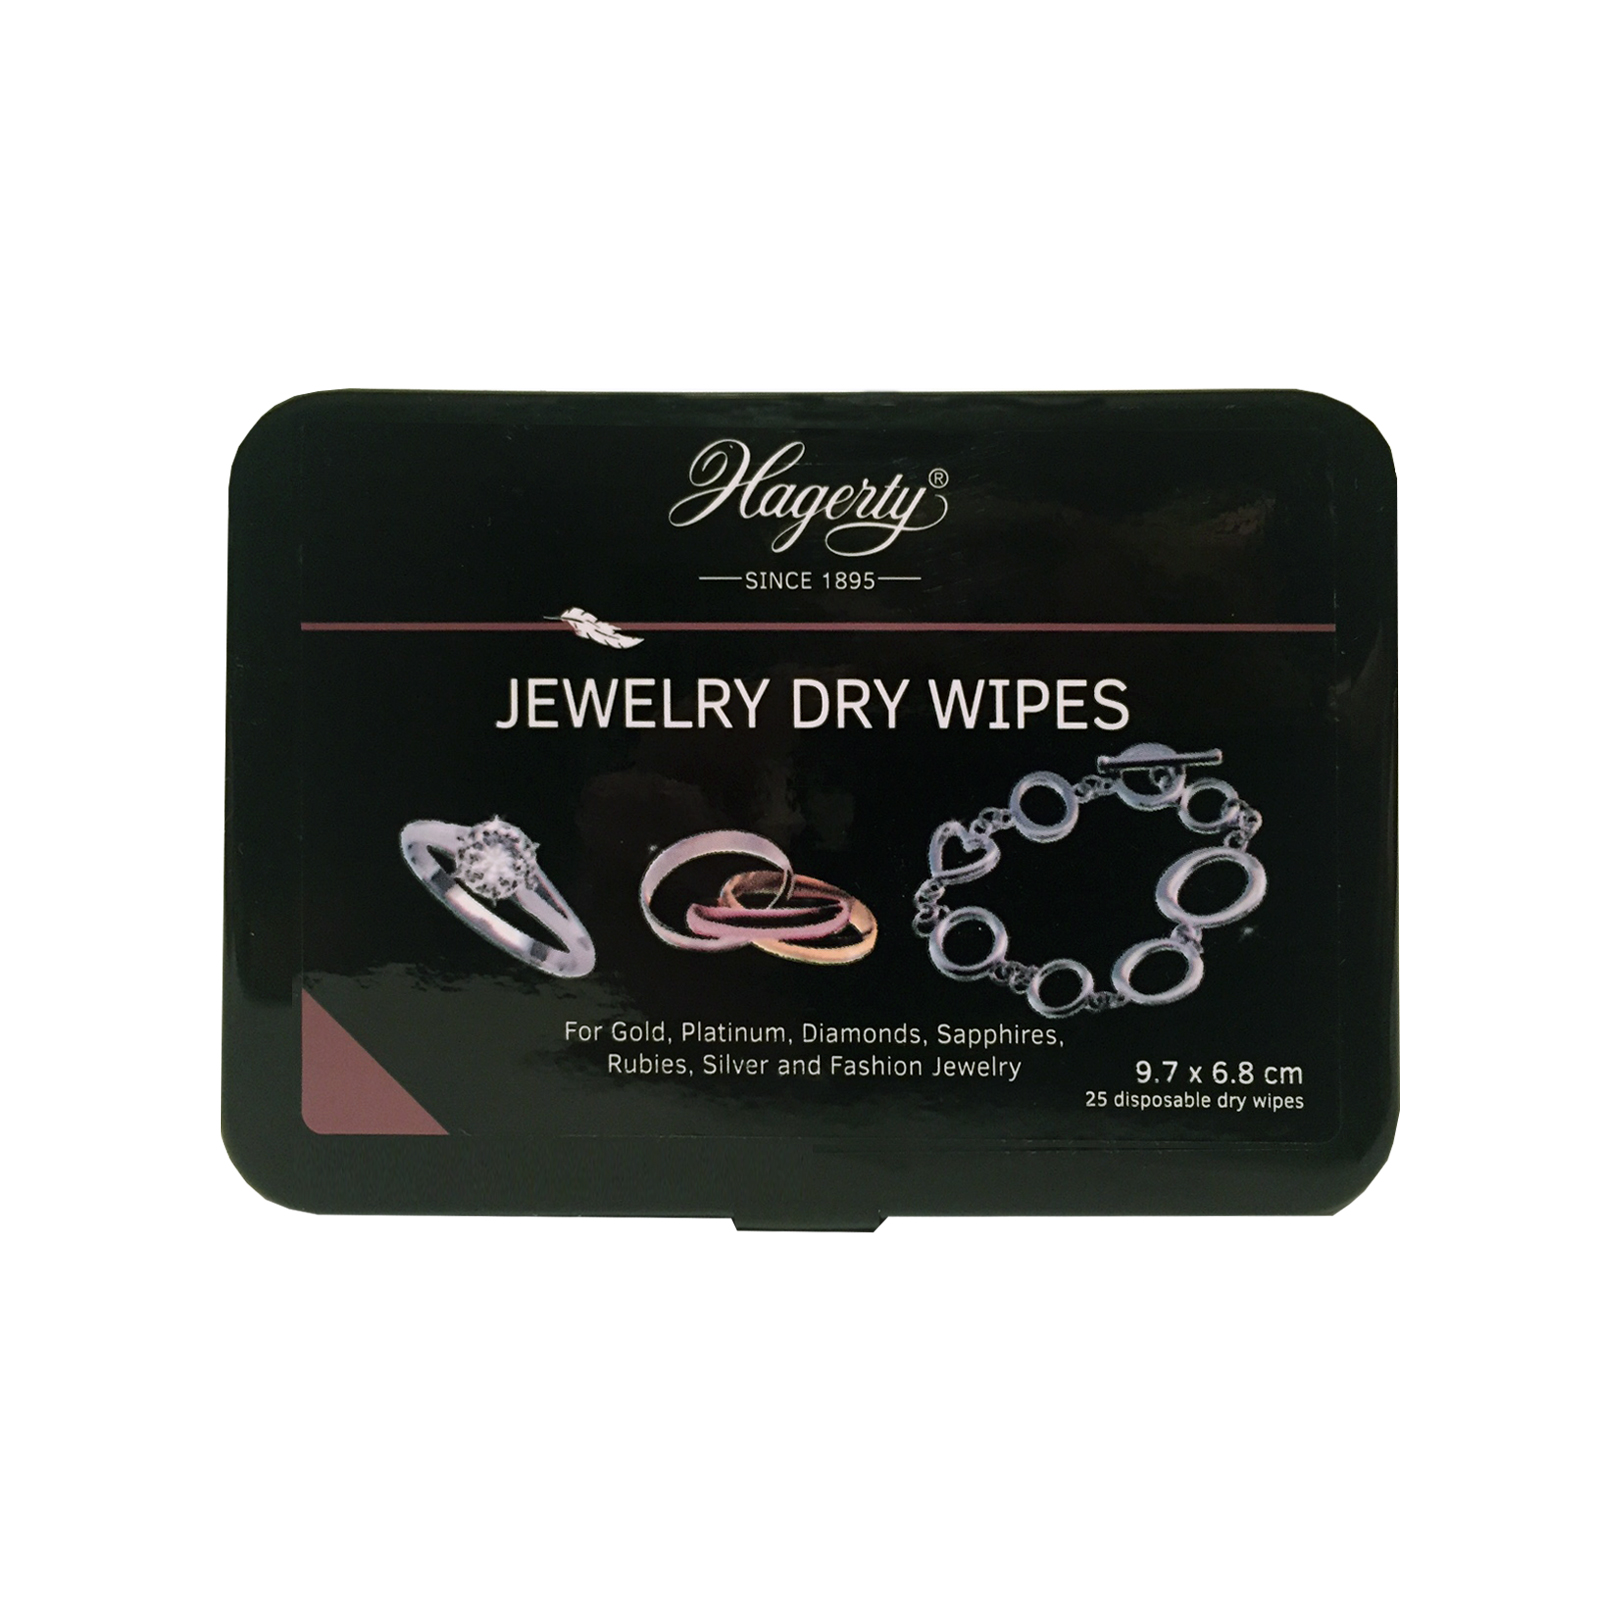 Hagerty Jewel Dry Wipes, 25 wegwerpdoekjes, 97 x 68 mm